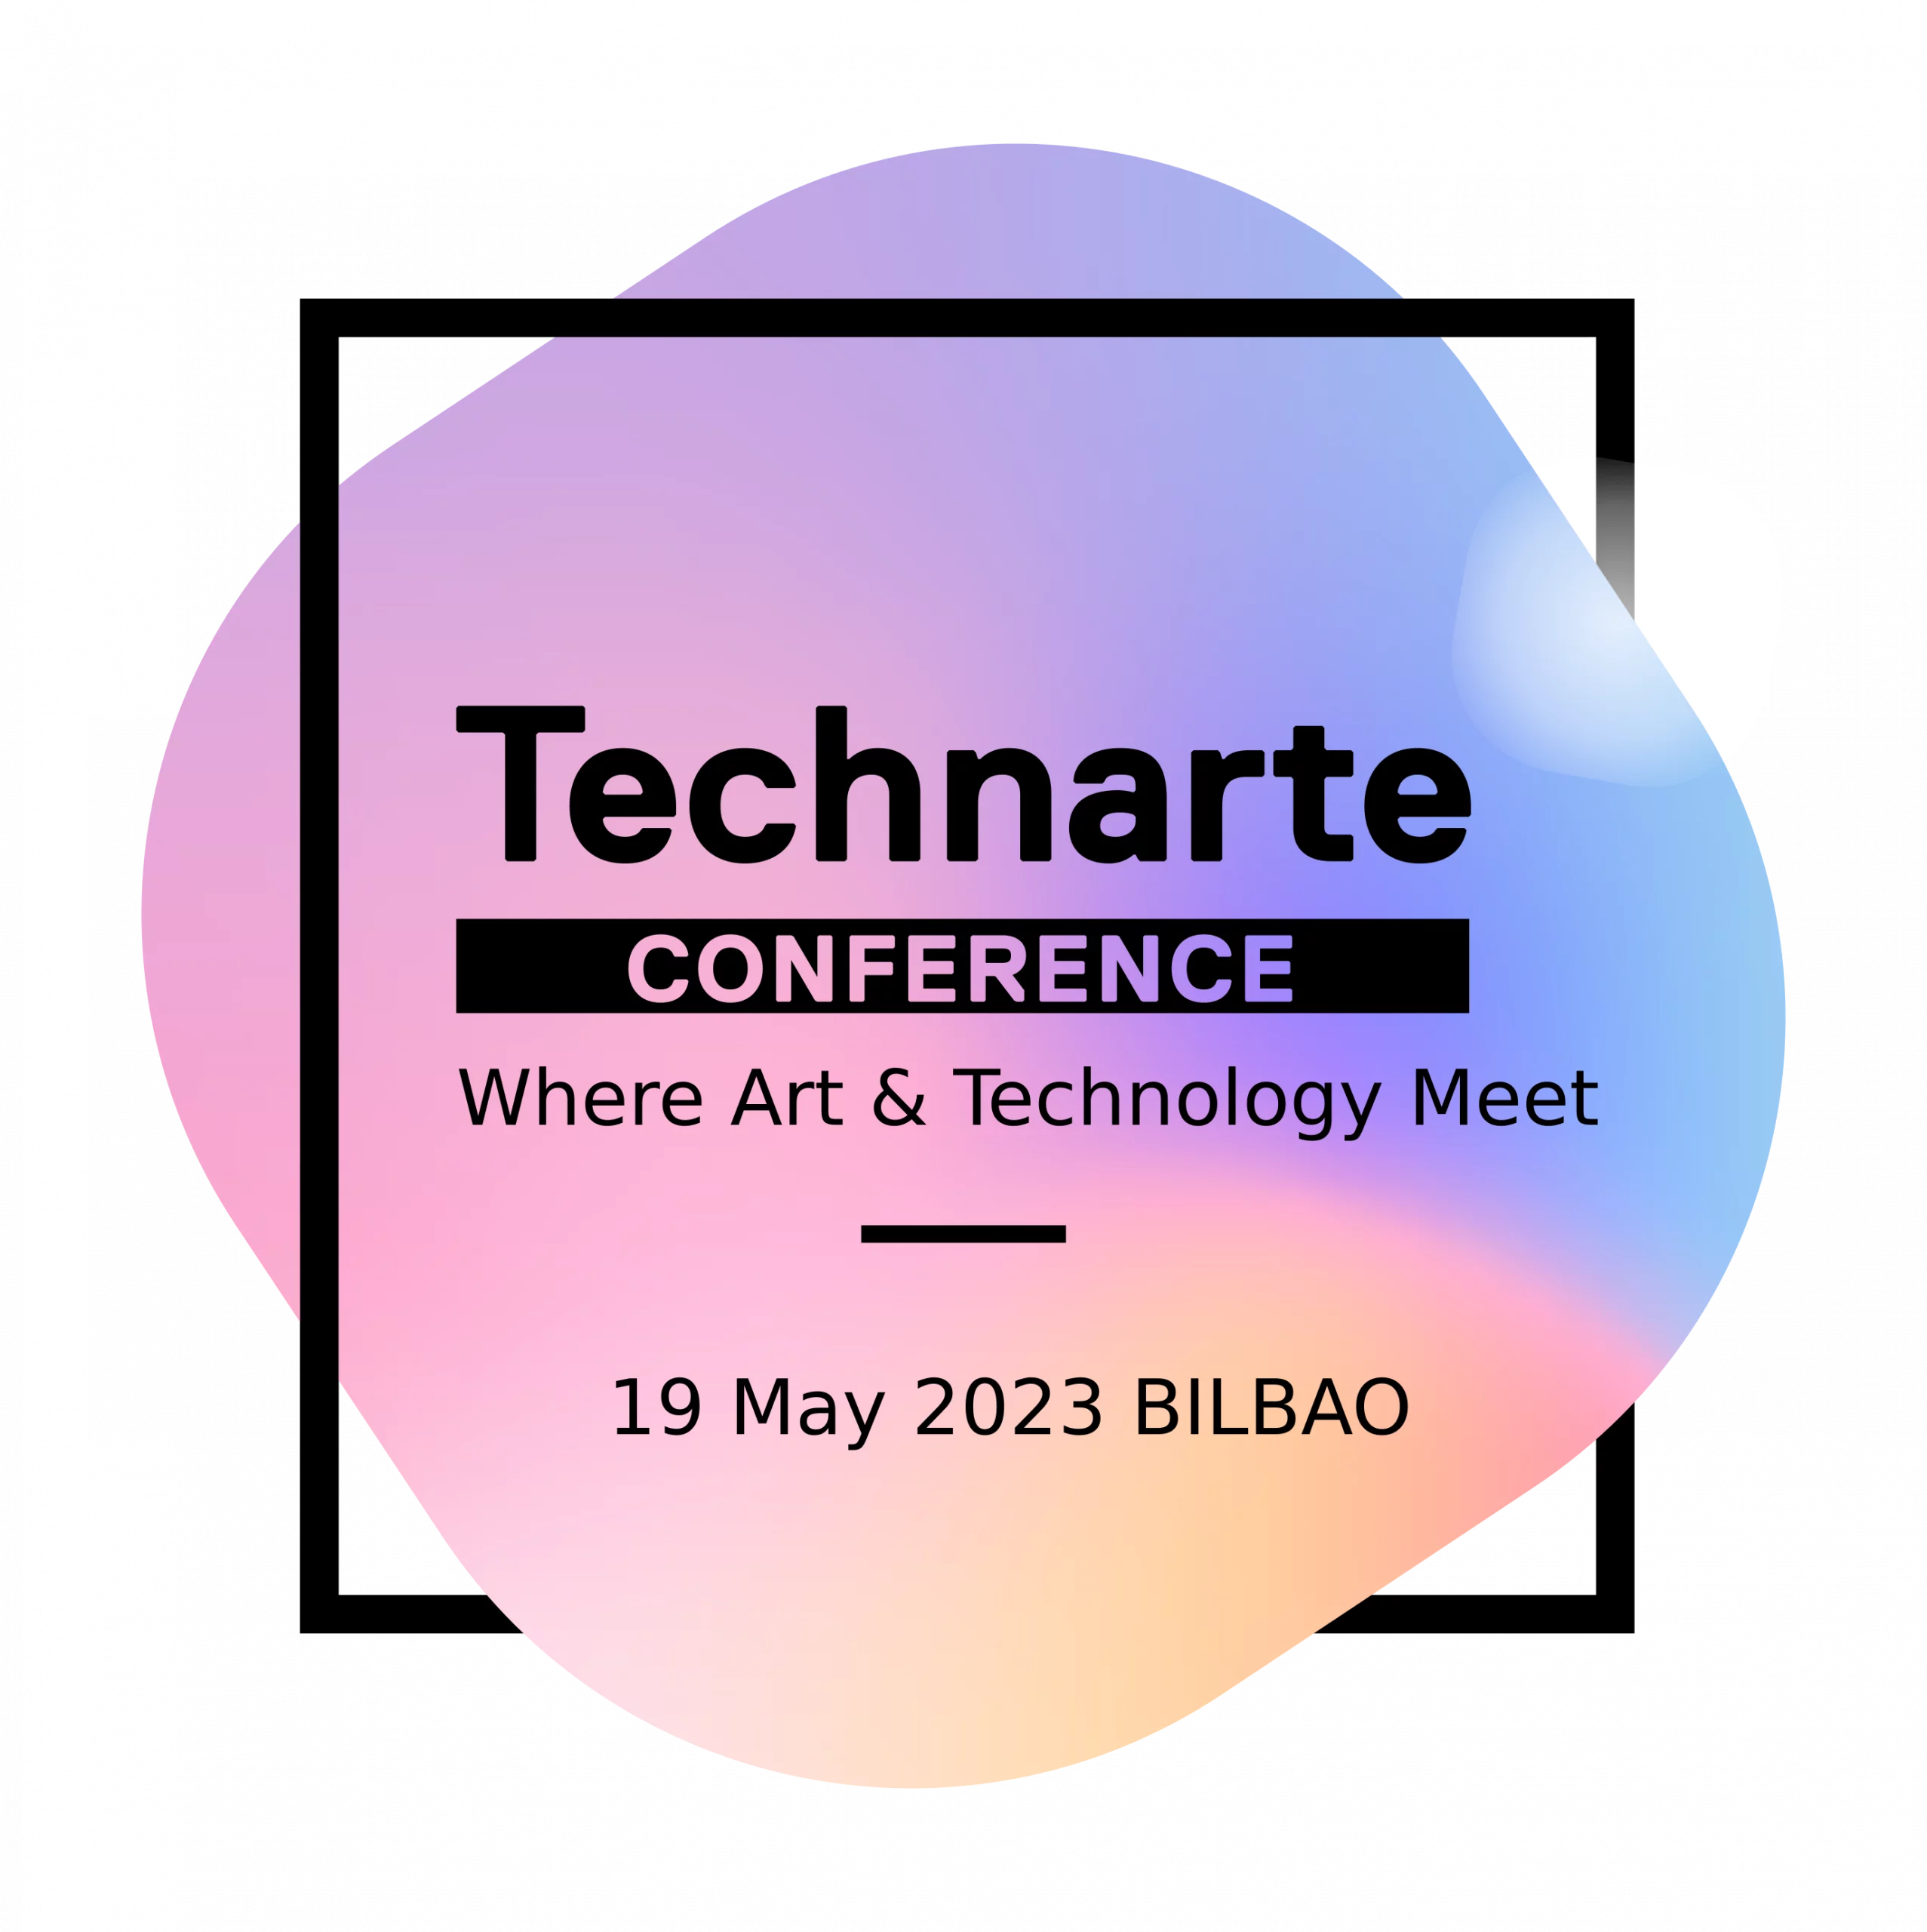 Technarte Conferencia Bilbao 2023